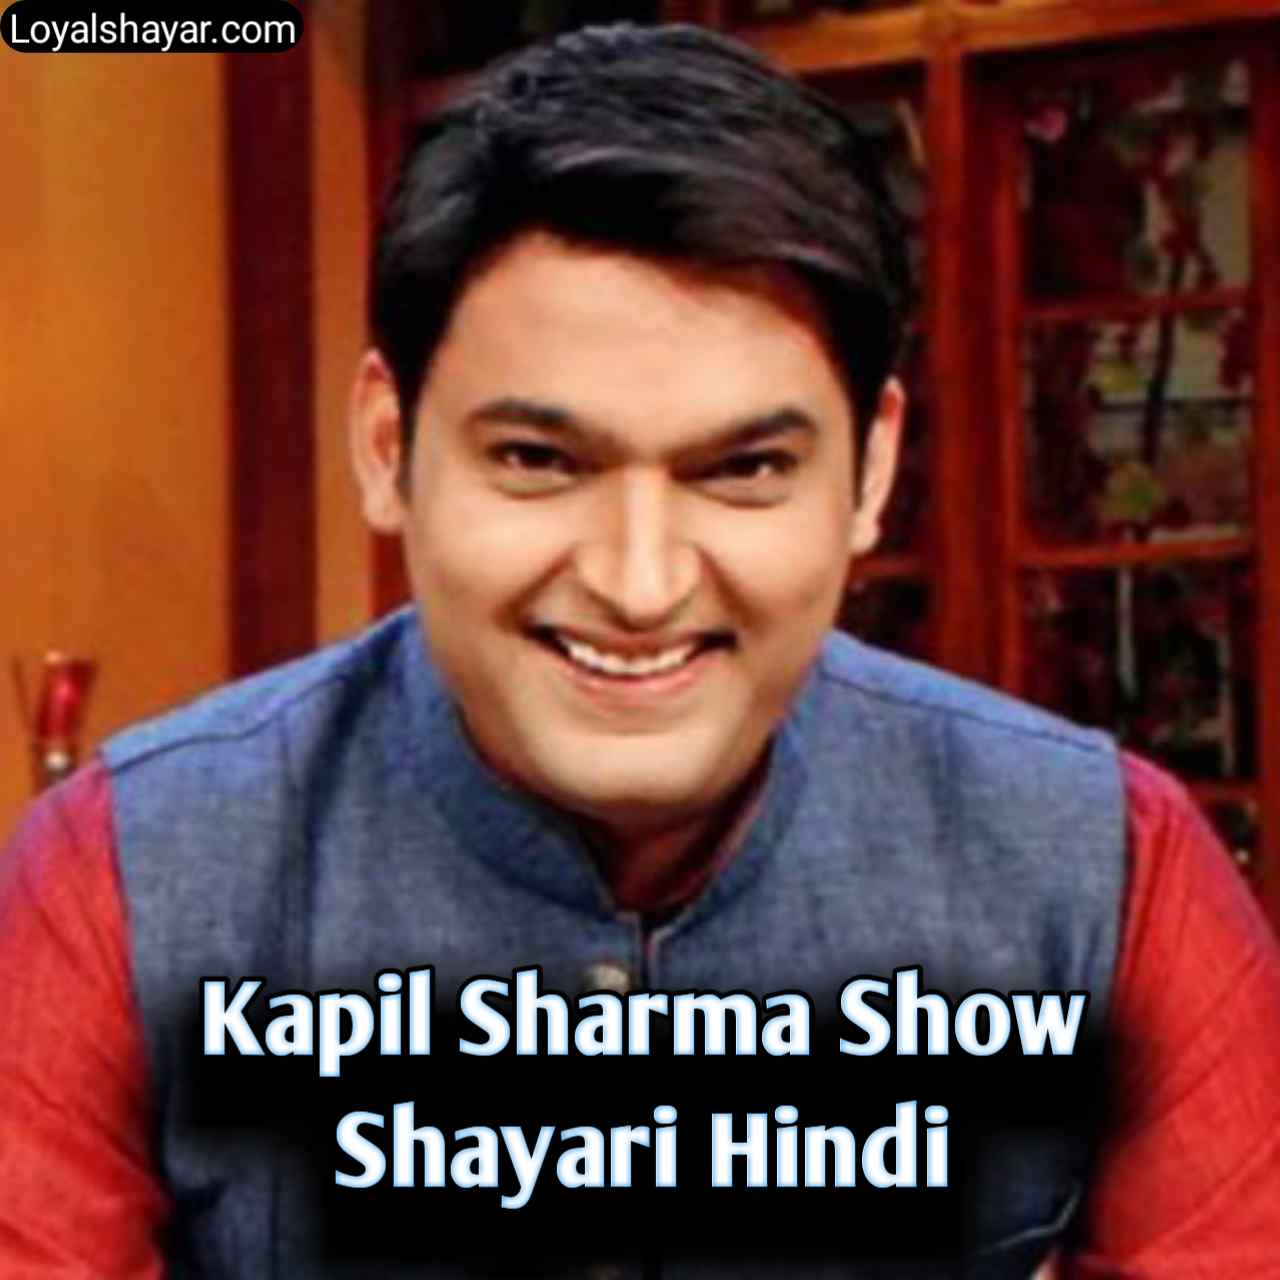 10+ Kapil Sharma Shayari | Best कपिल शर्मा शायरी (2022) | Loyal Shayar